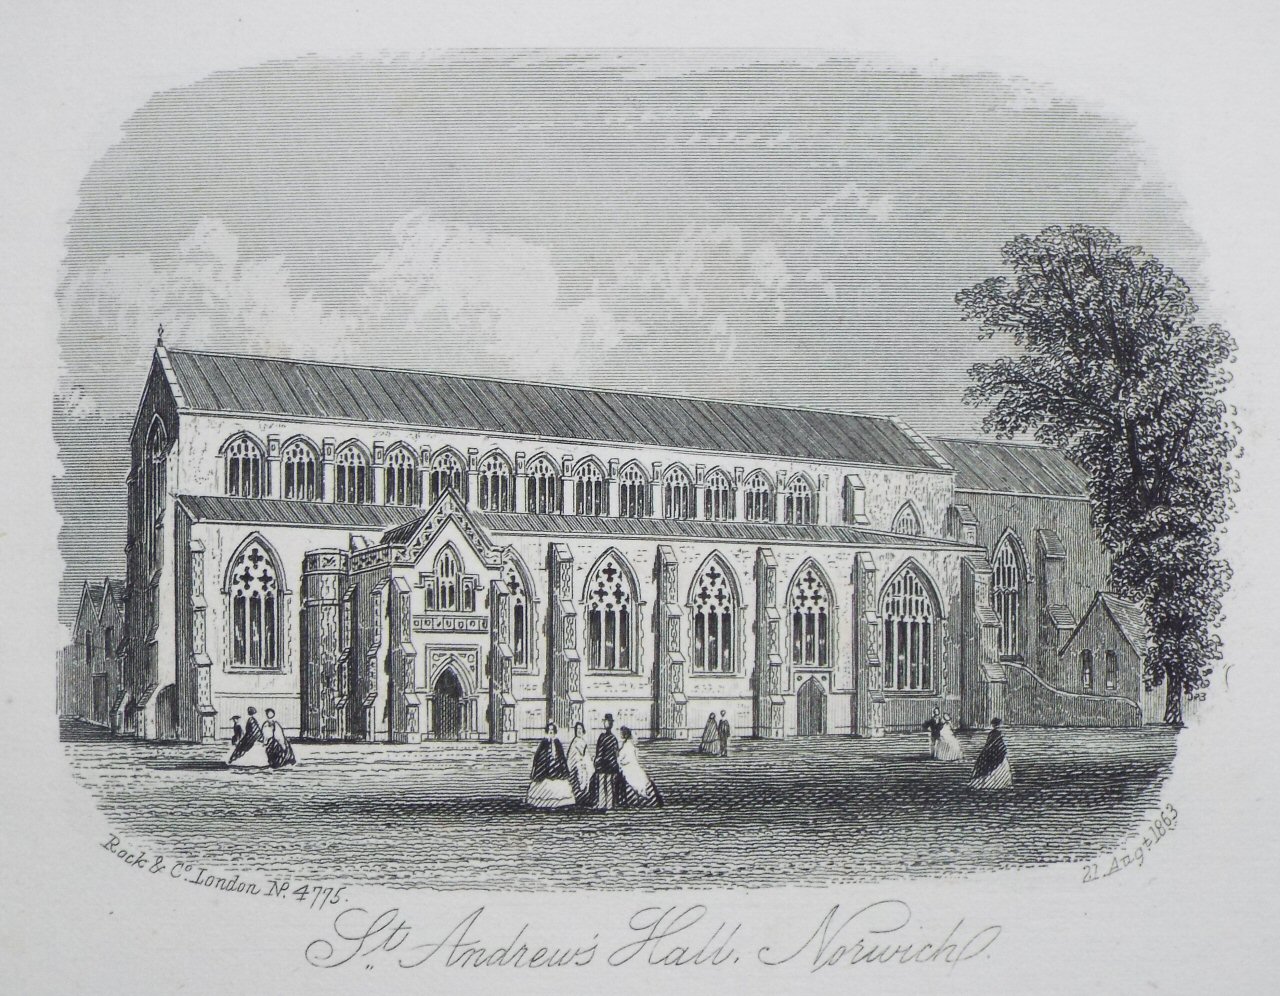 Steel Vignette - St. Andrew's Hall, Norwich - Rock